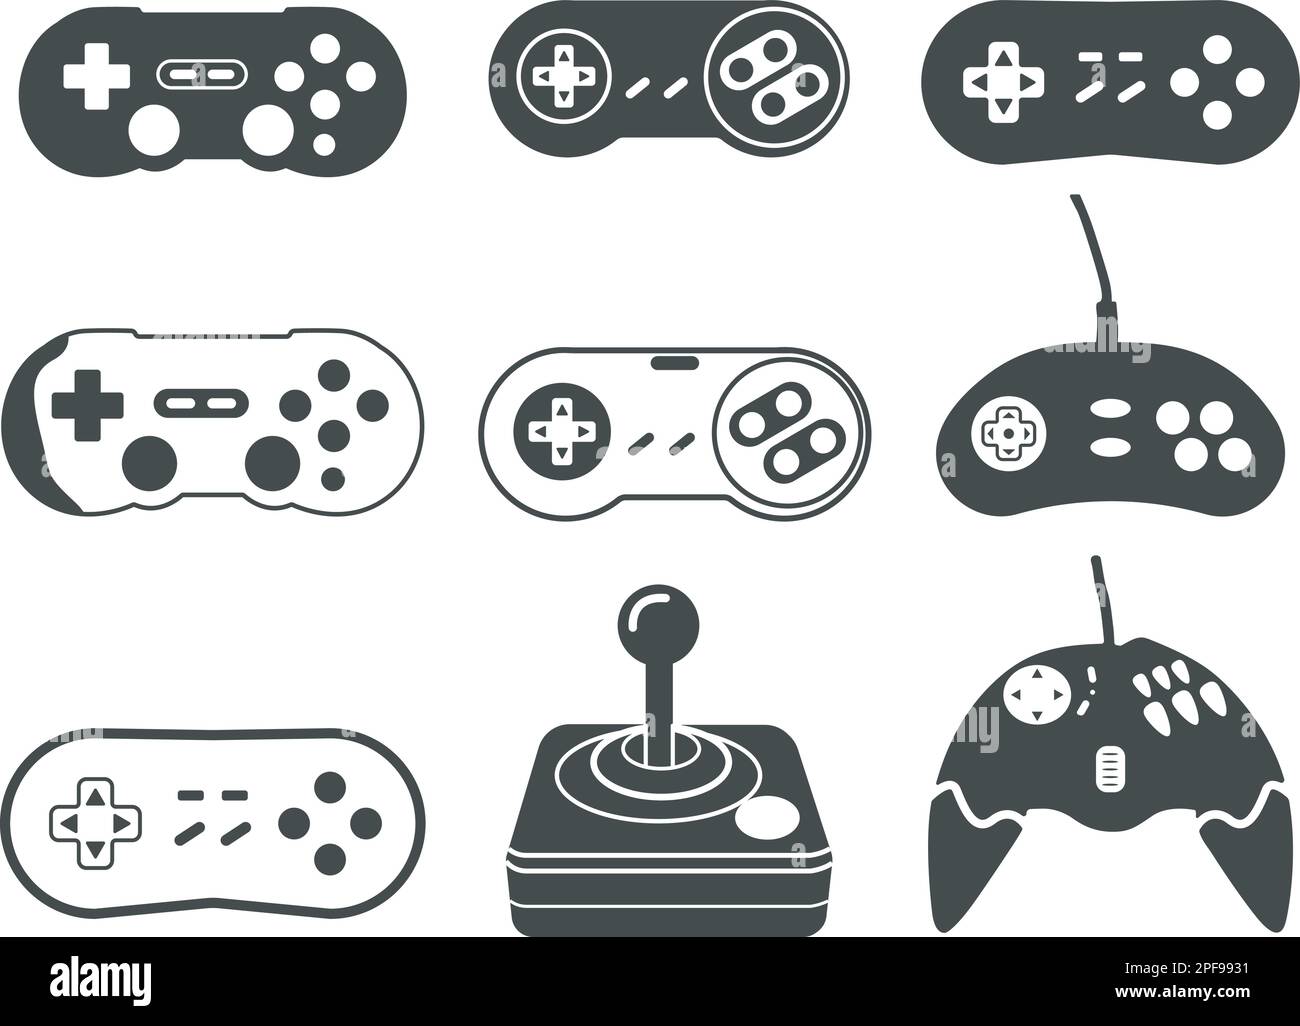 Spielcontroller-Silhouette, Old Game Controller SVG, Joystick für Videospiele, Spielgerät, Vektordarstellung der Spielkonsole. Stock Vektor